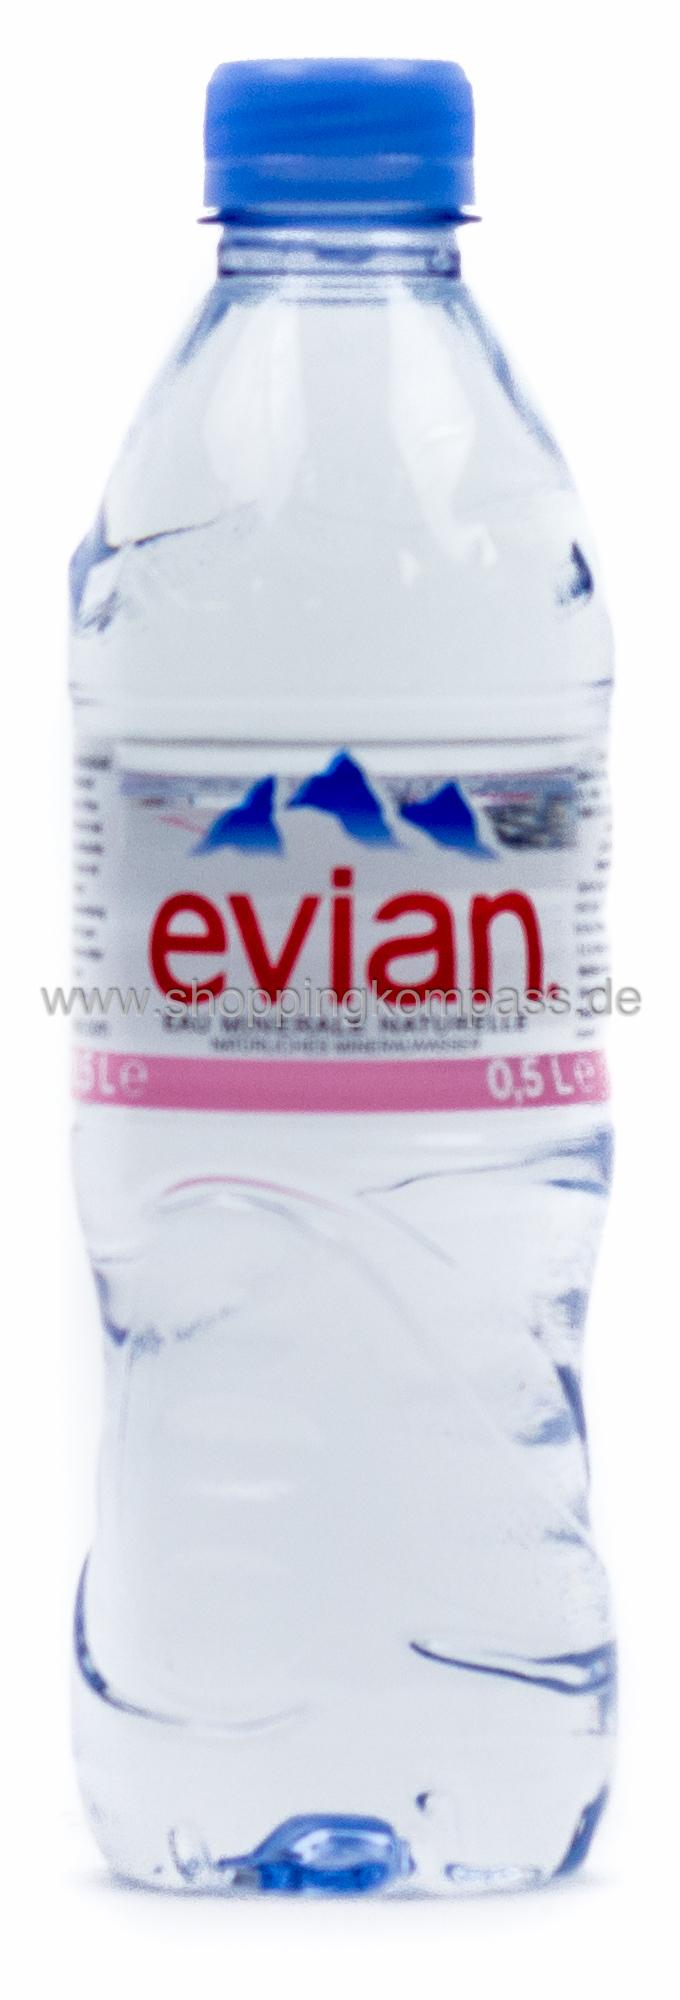 Evian Mineralwasser Naturelle Kasten 20 x 0,5 l PET Einweg